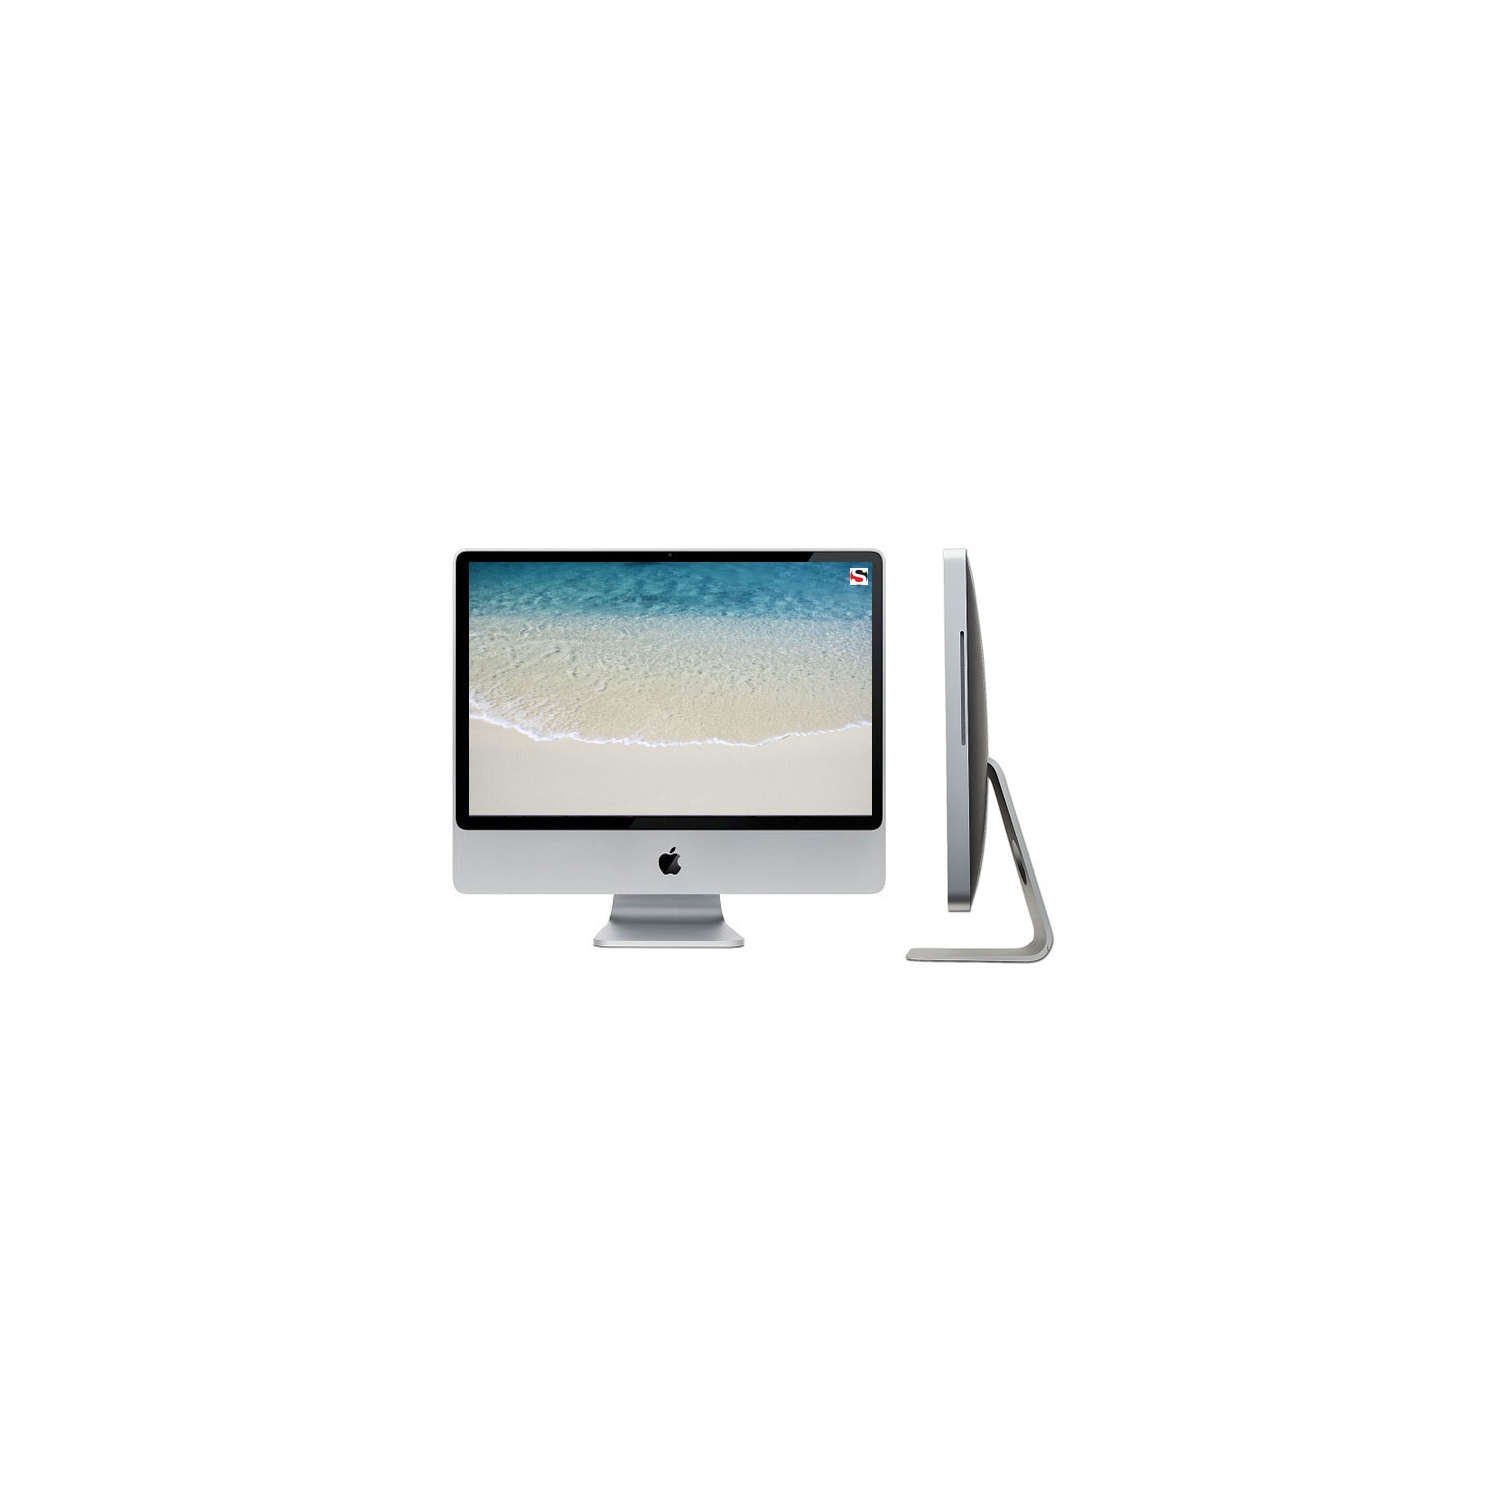 Refurbished (Excellent) - Apple iMac 21.5